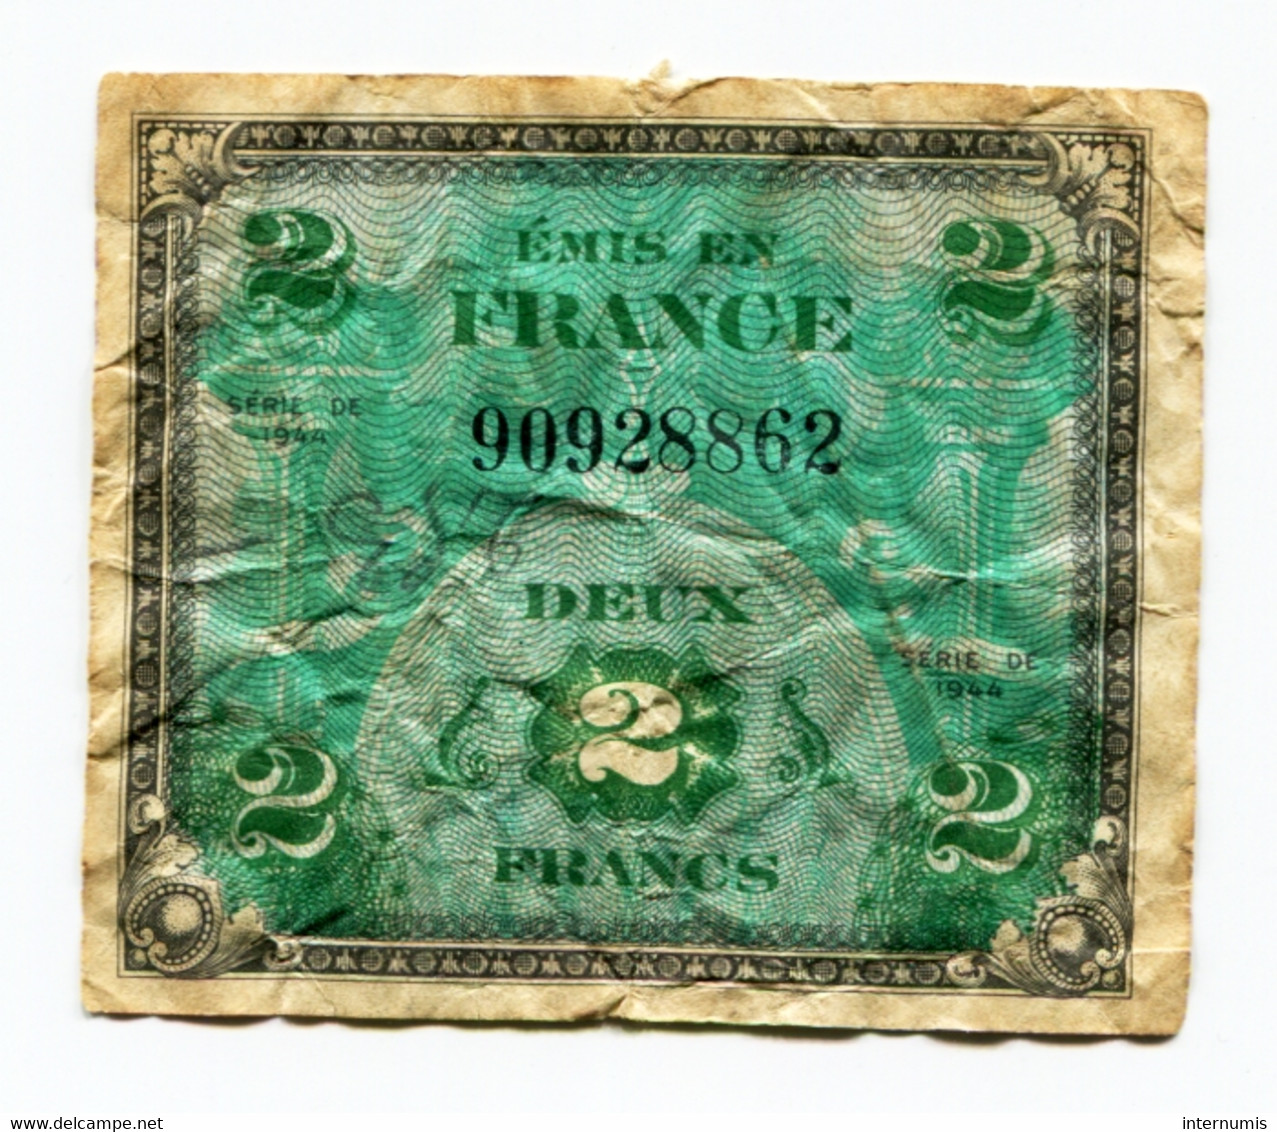 France, 2 Francs, DRAPEAU Sans Série, TYPE DE 1944, N° : 90928862, B (VG), VF.16.01 - 1944 Drapeau/Francia